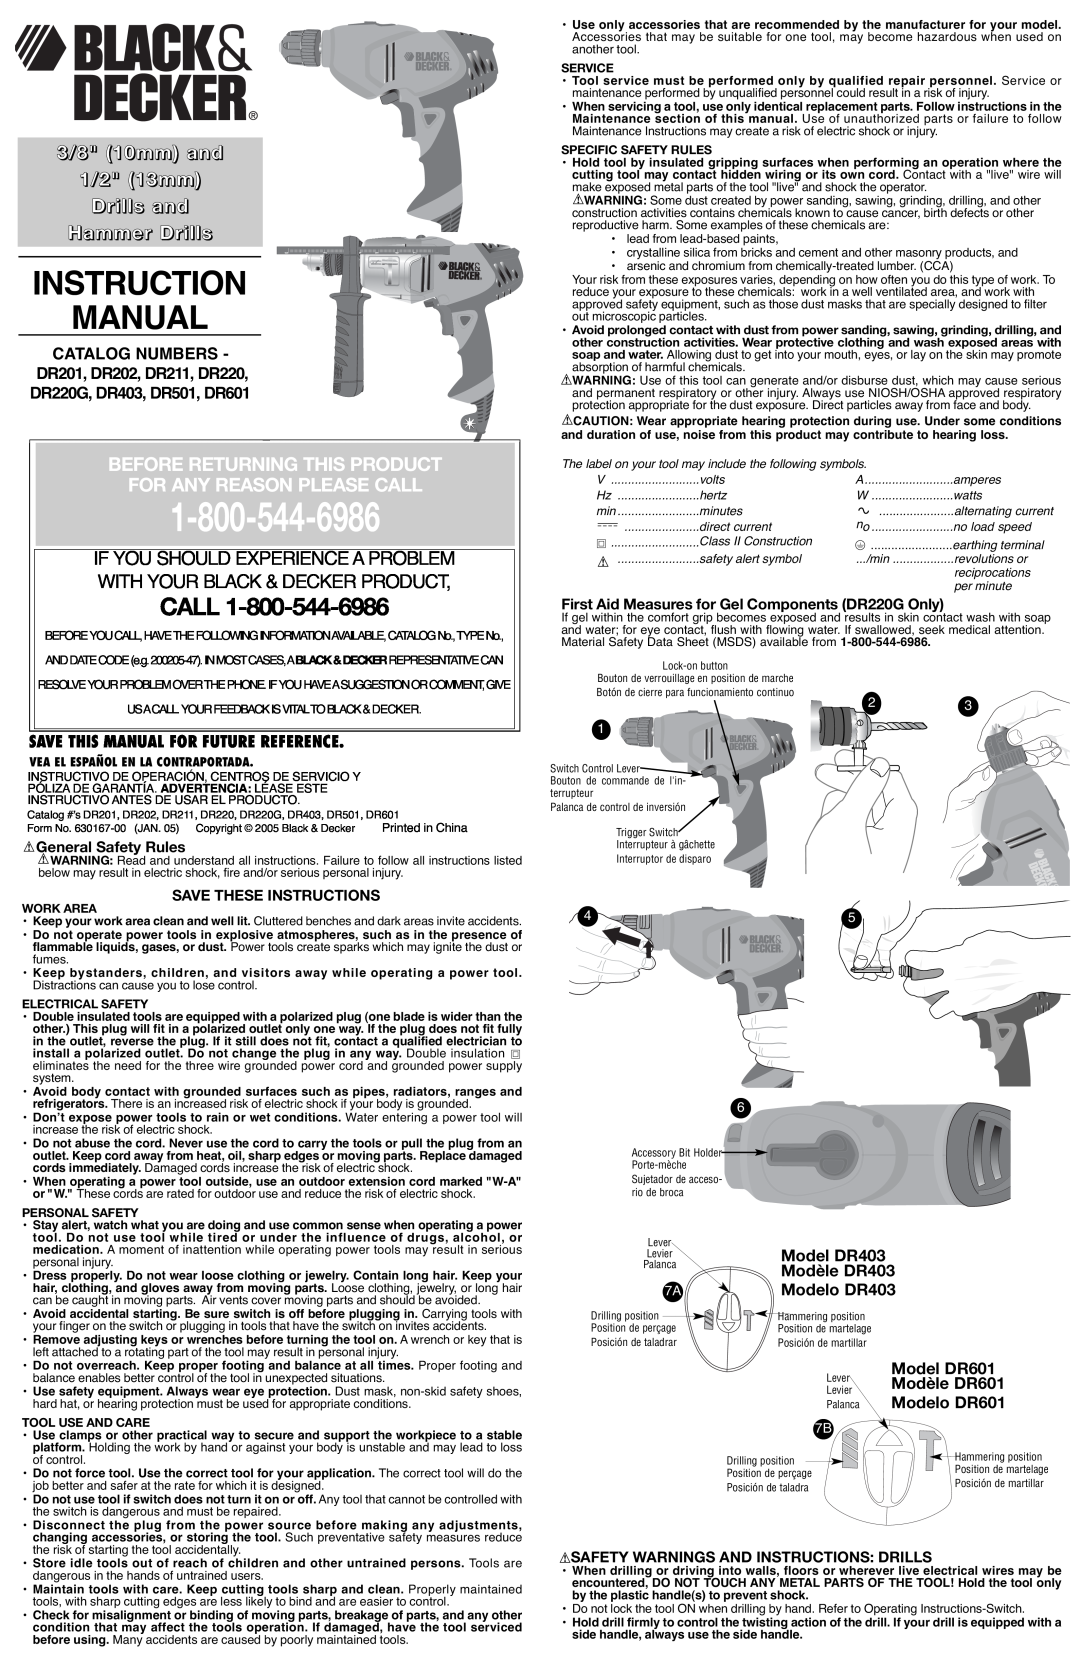 Black & Decker DR403, DR501 instruction manual Instruction Manual, 3/8 10mm and 1/2 13mm Drills and Hammer Drills, Call 